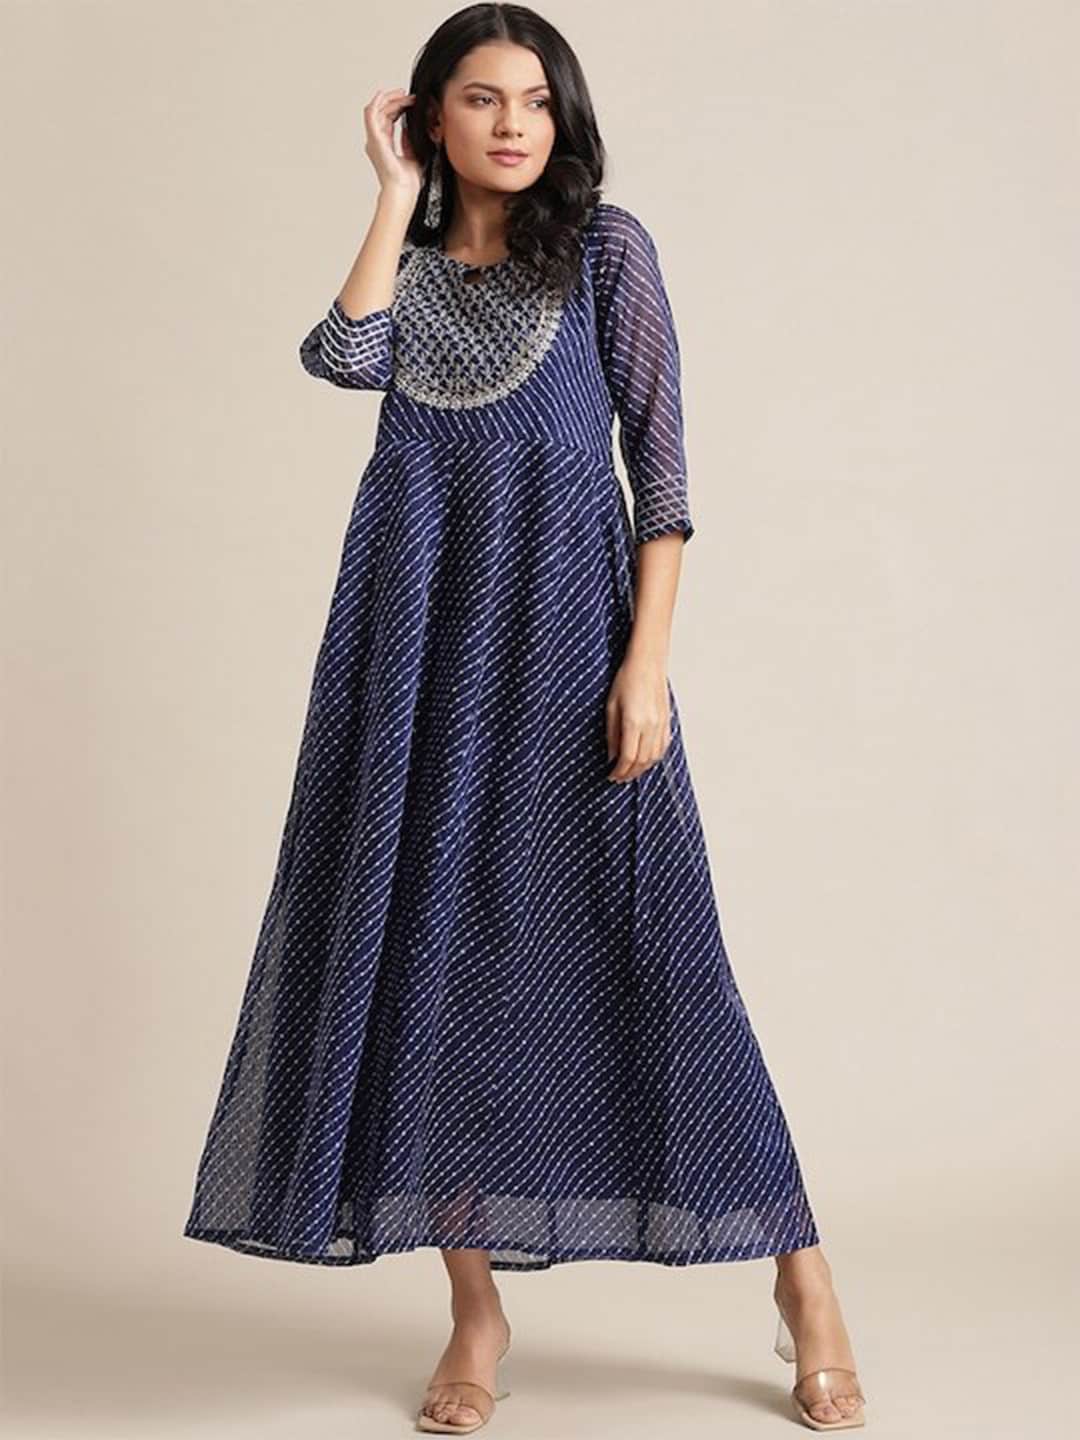 Varanga Ethnic Motifs Ethnic Maxi Dress Price in India